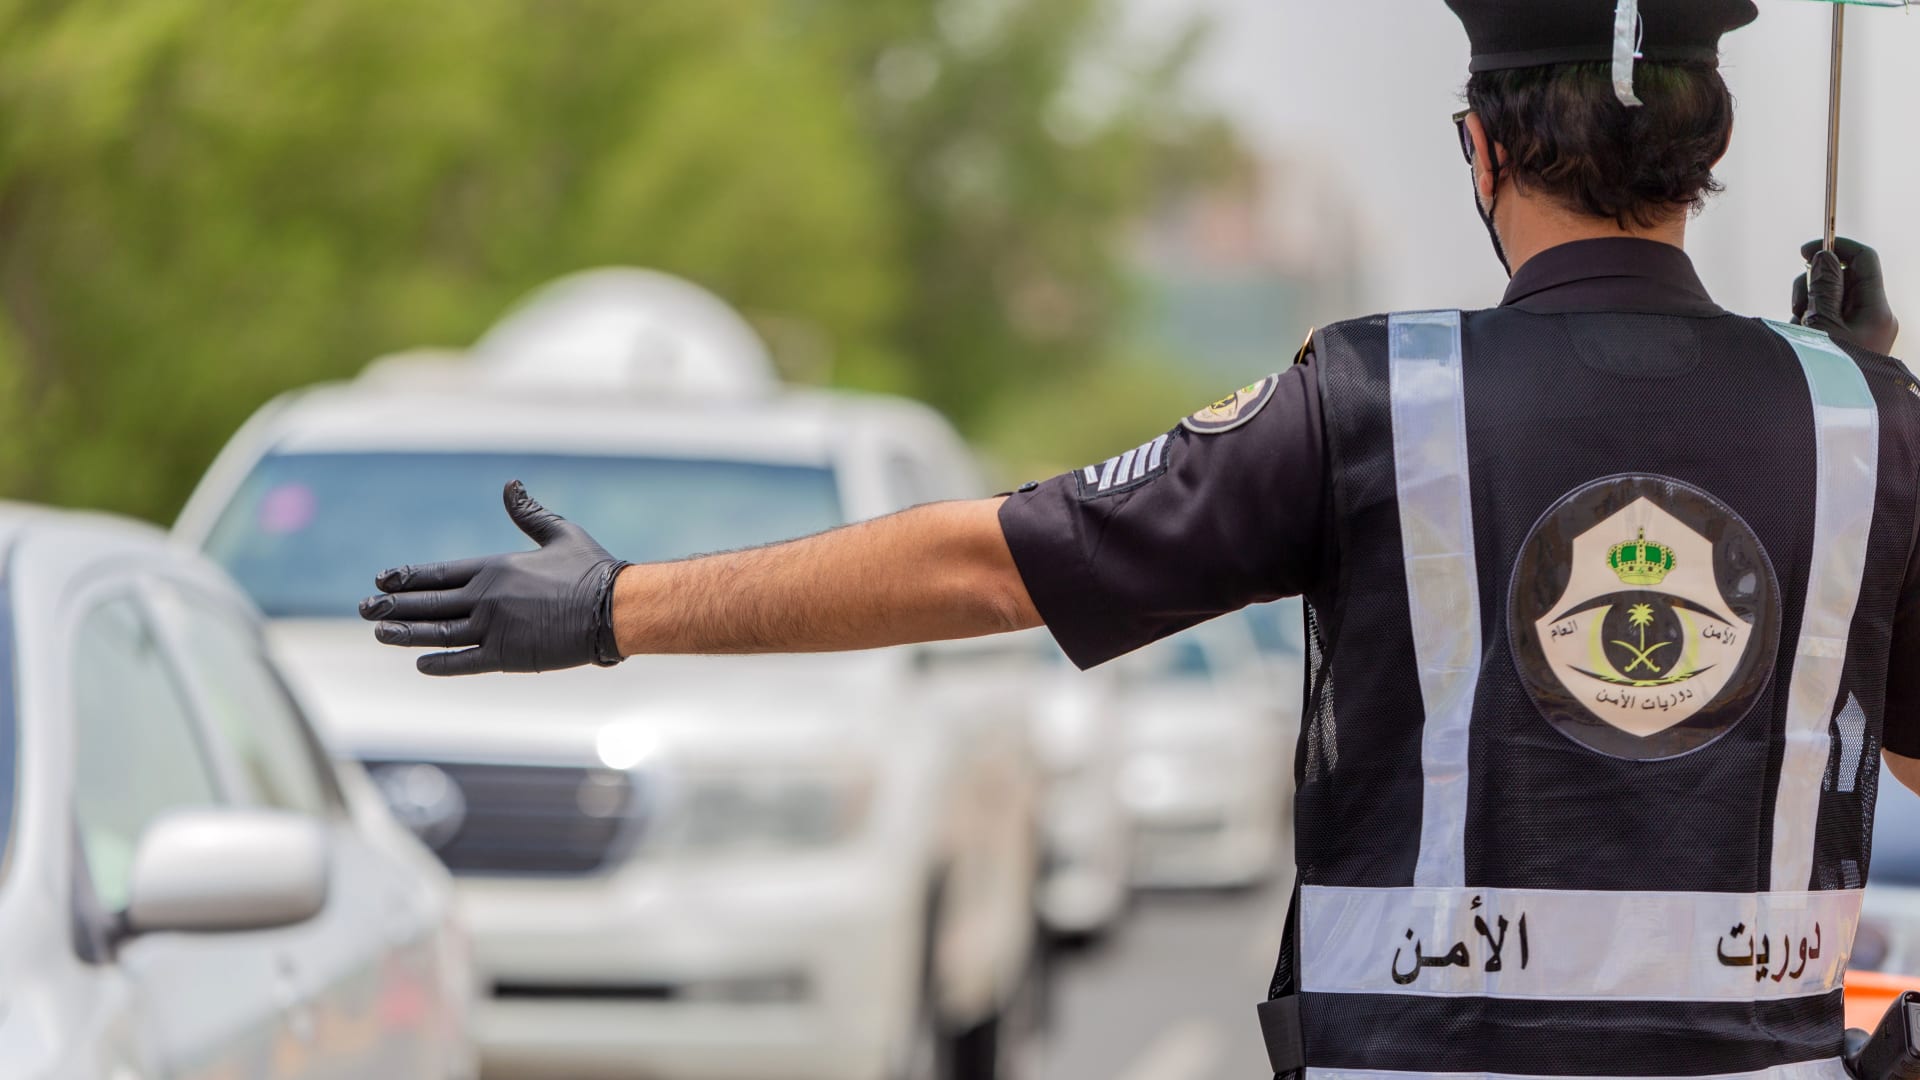 السعودية.. القبض على شخص نشر معلومات كاذبة "تمس بالنظام العام"